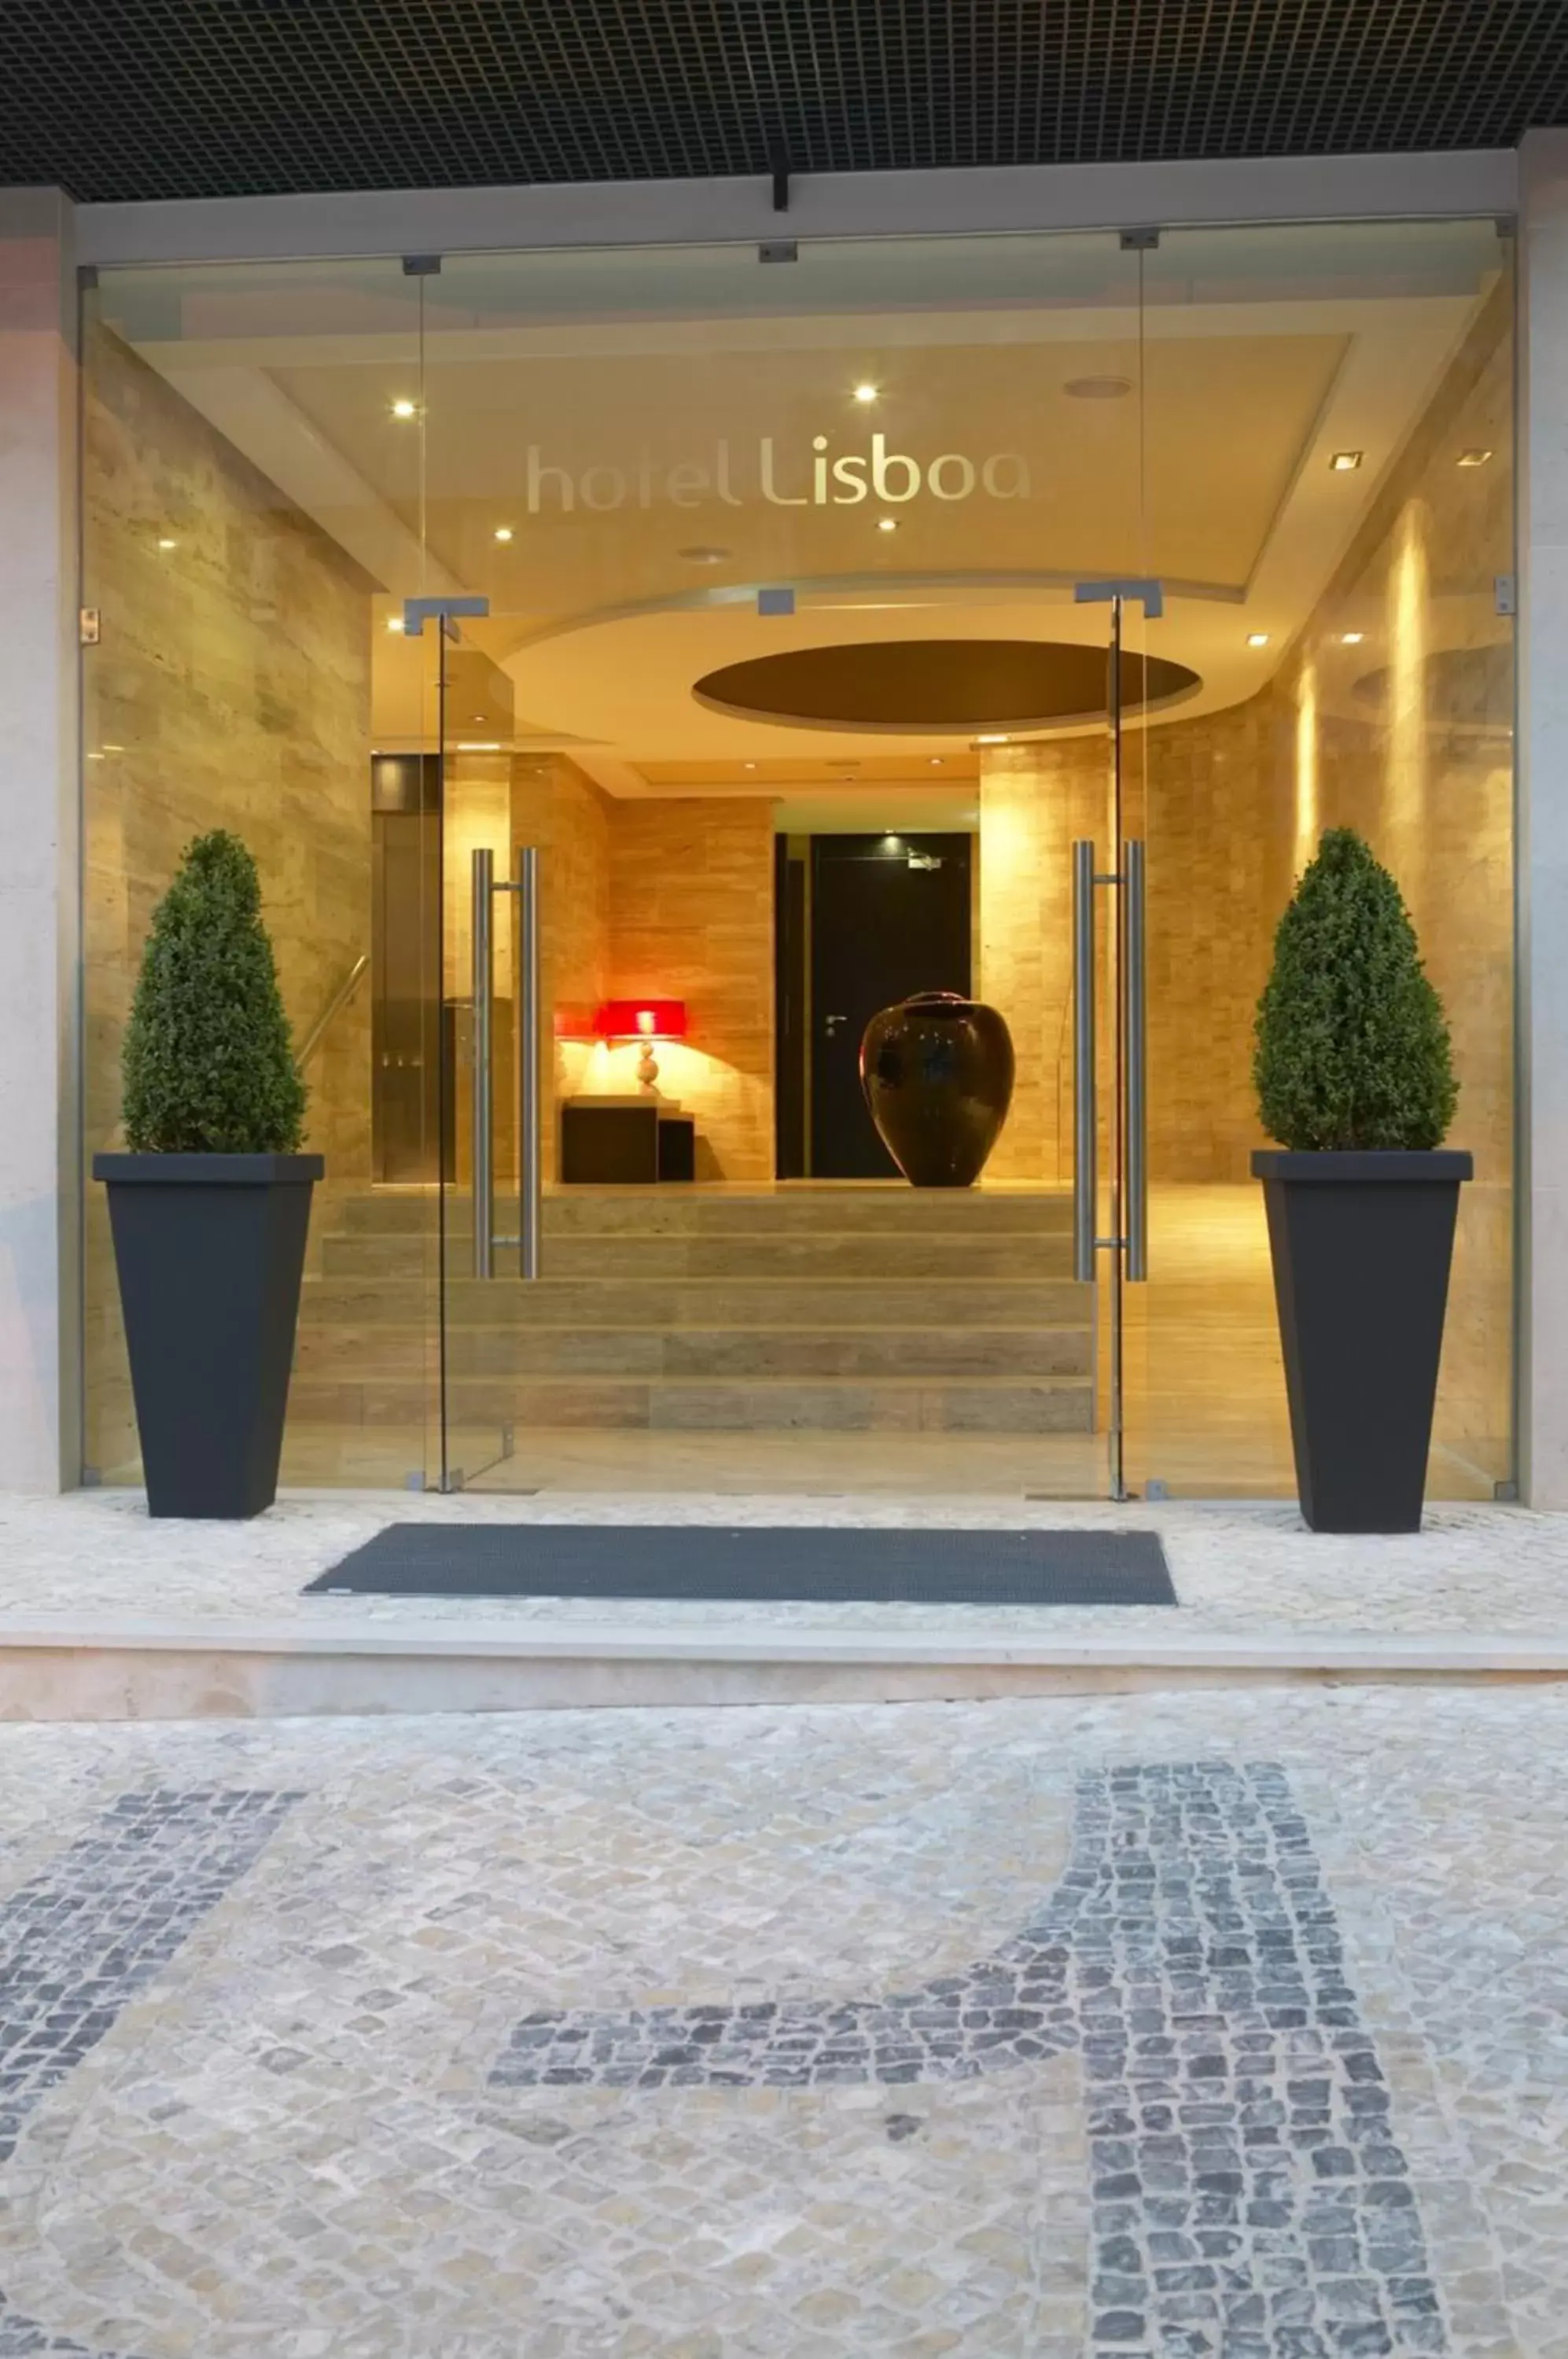 Facade/Entrance in Hotel Lisboa